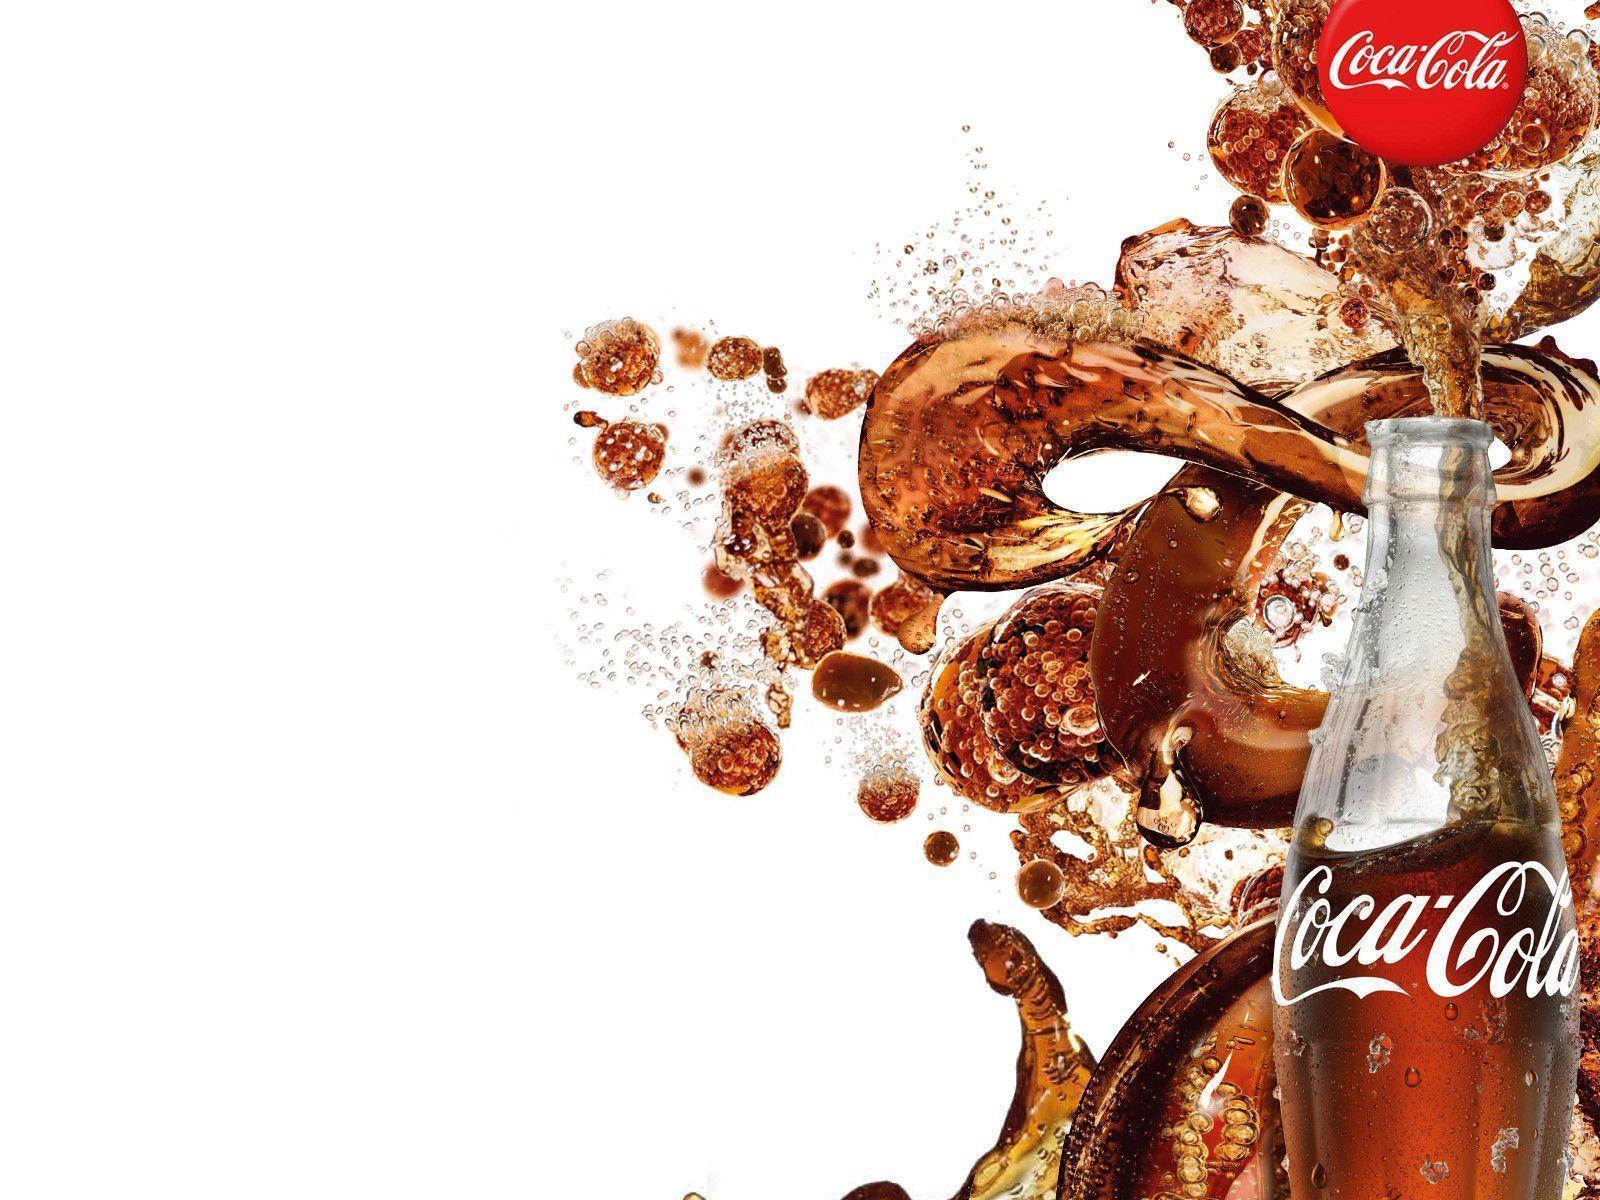 CocaCola Logo Erythroxylum coca Nền máy tính  coca cola png tải về  Miễn  phí trong suốt Coca Cola png Tải về